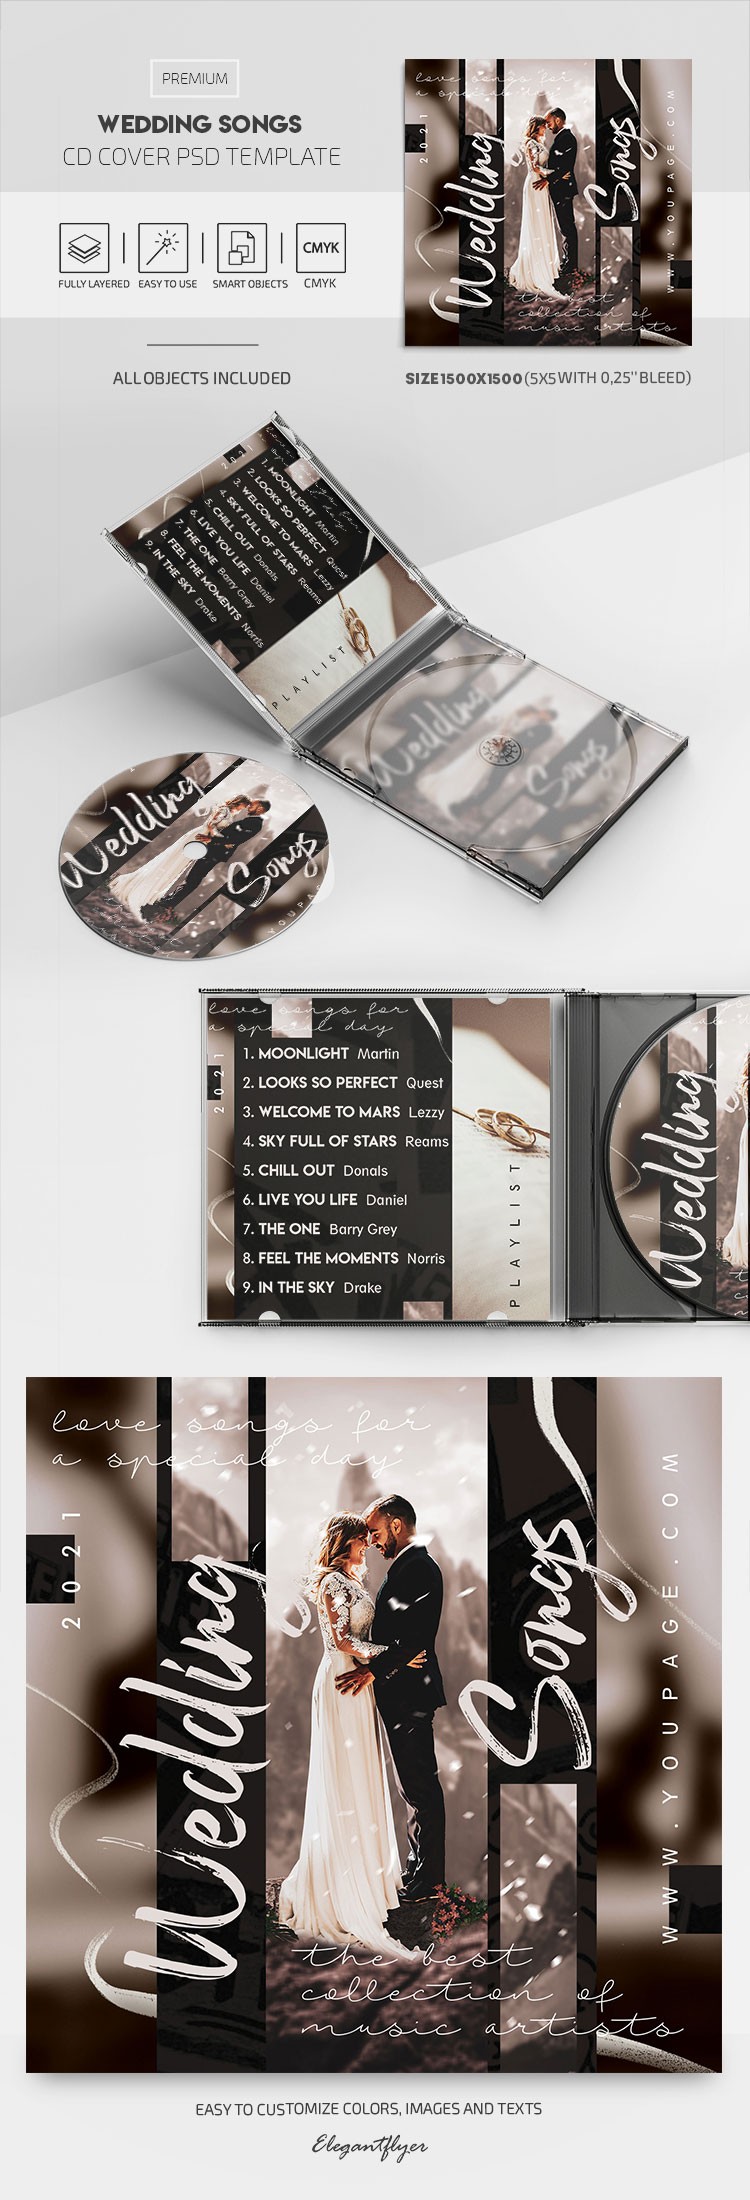 Okładka płyty CD ze ślubnymi piosenkami by ElegantFlyer